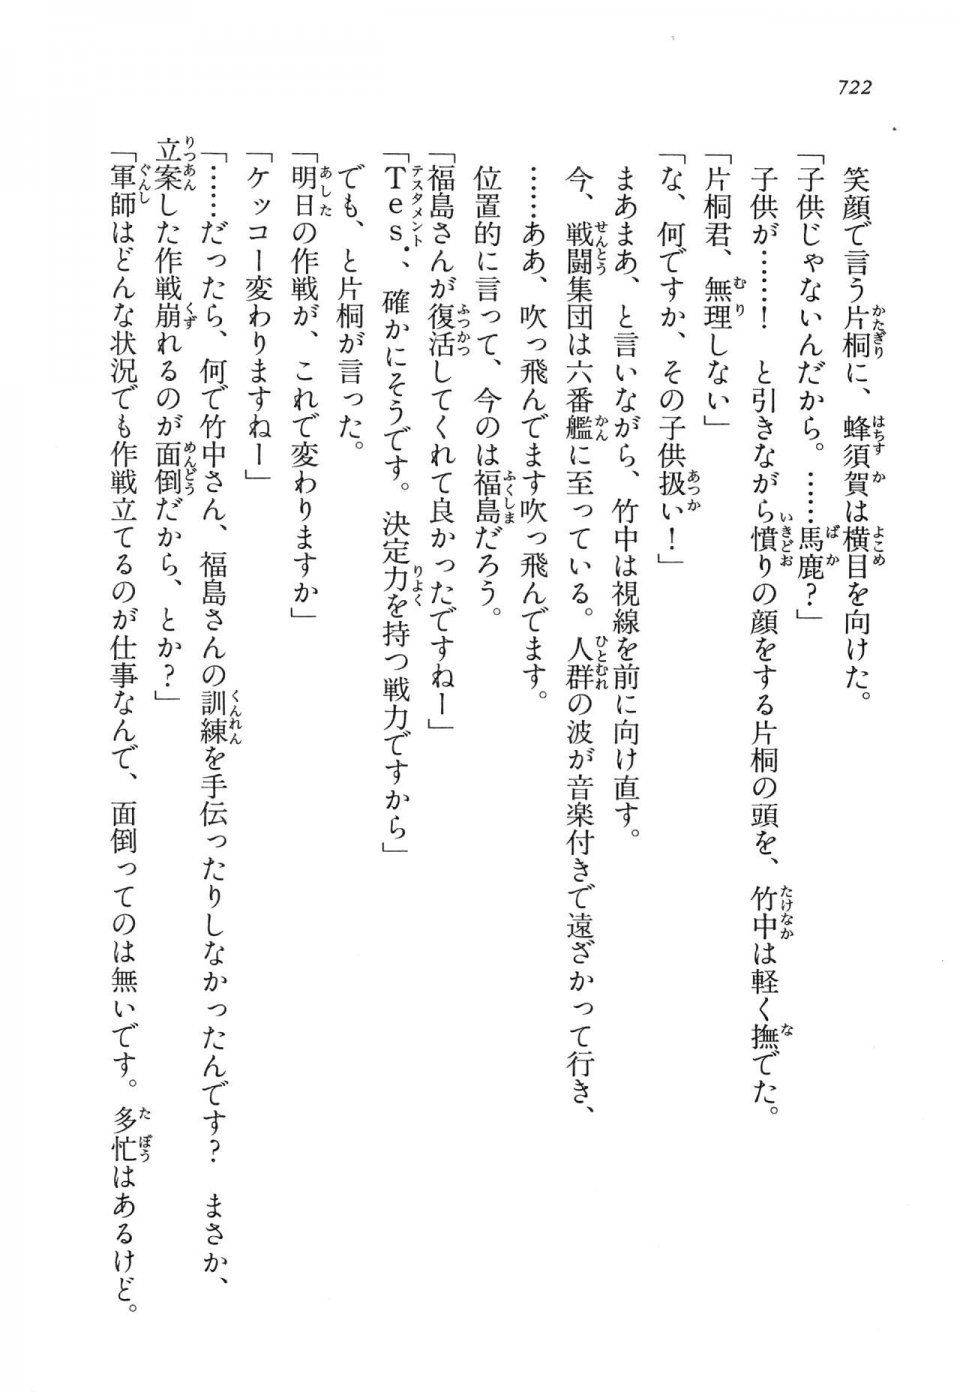 Kyoukai Senjou no Horizon LN Vol 14(6B) - Photo #722